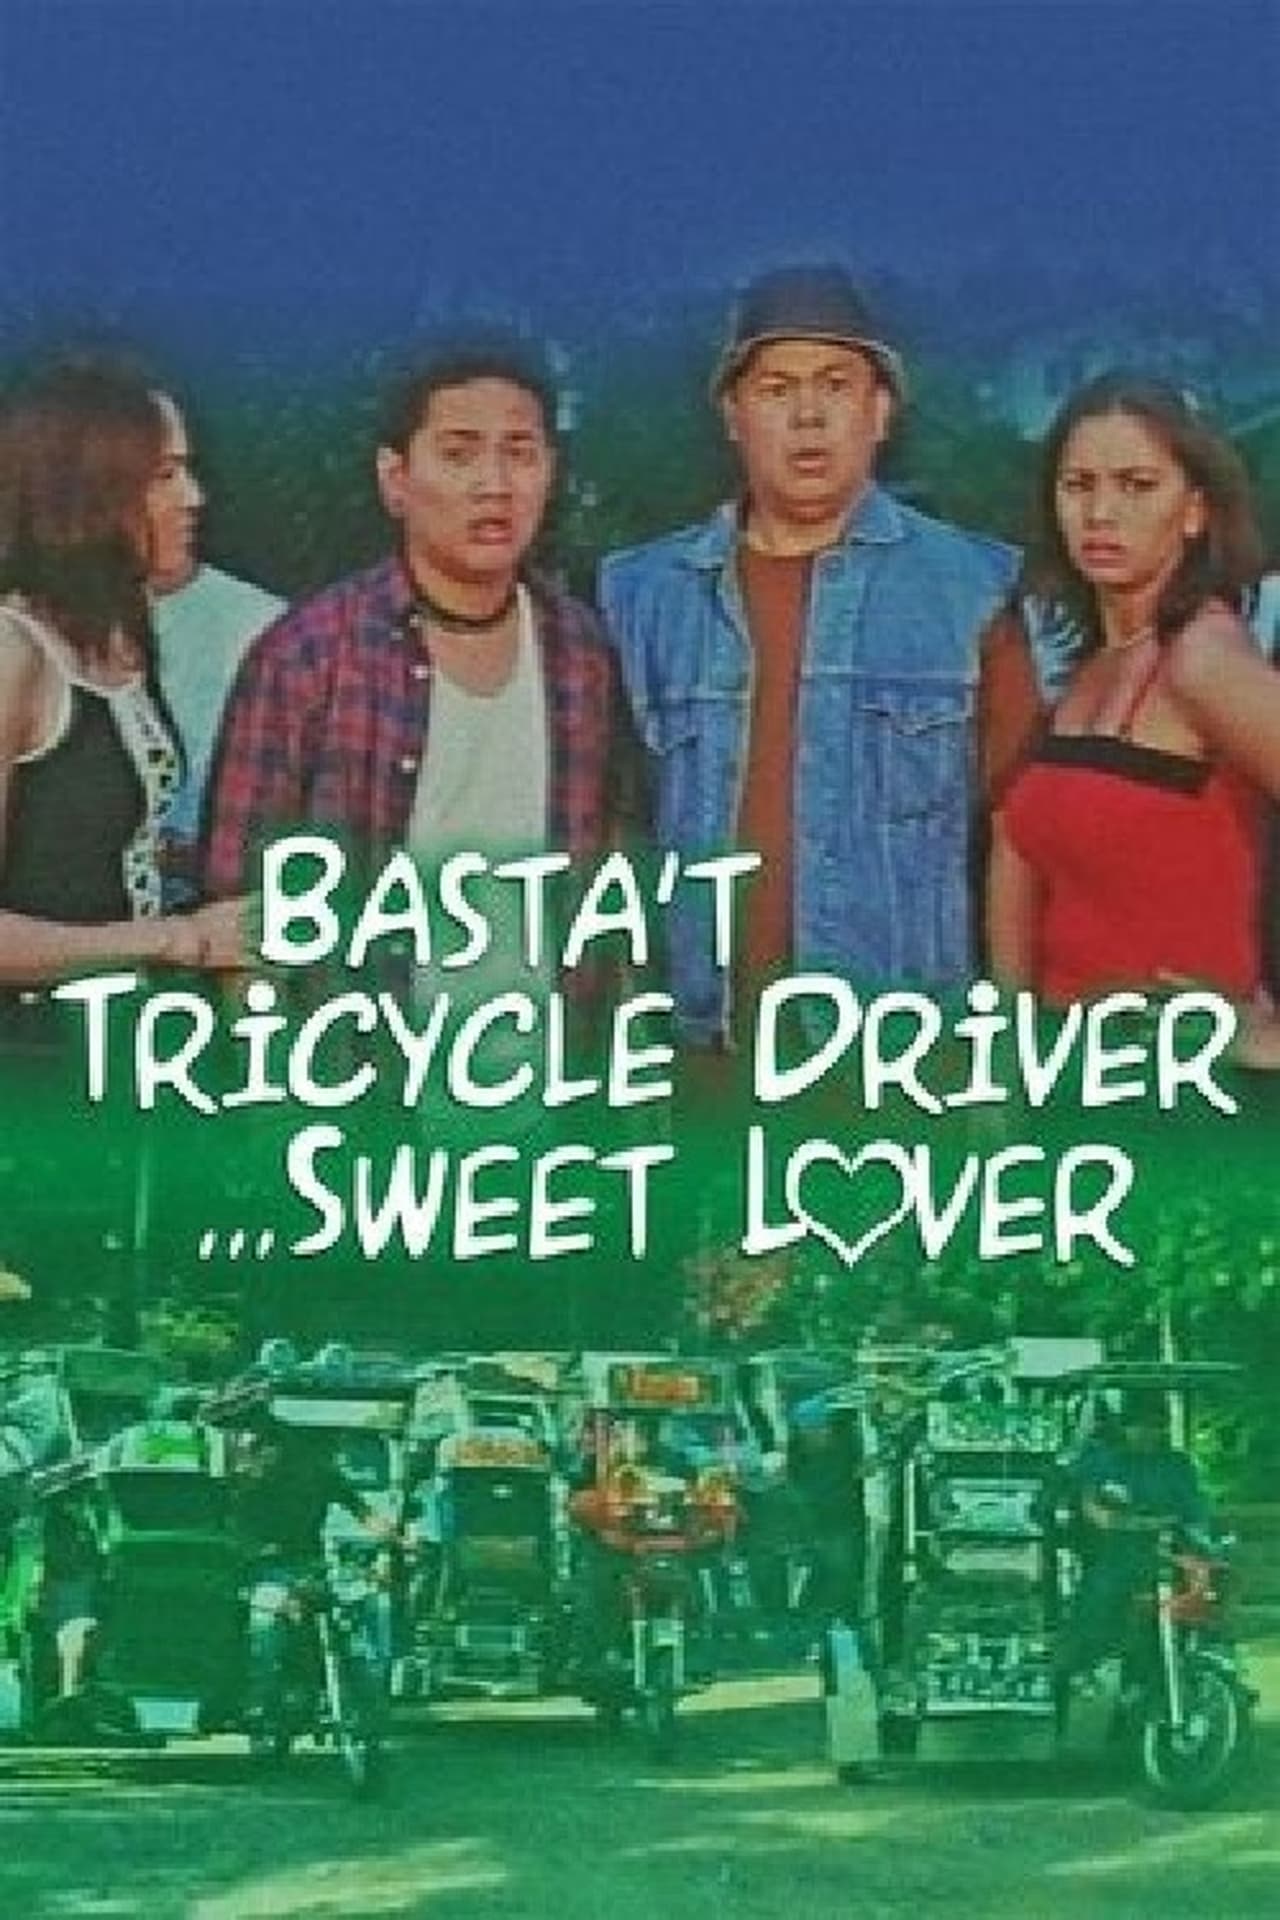 Sweet lover. Driver Sweet lover. Les Sabler Sweet Drive 2007. Driver Sweet lover slogan.